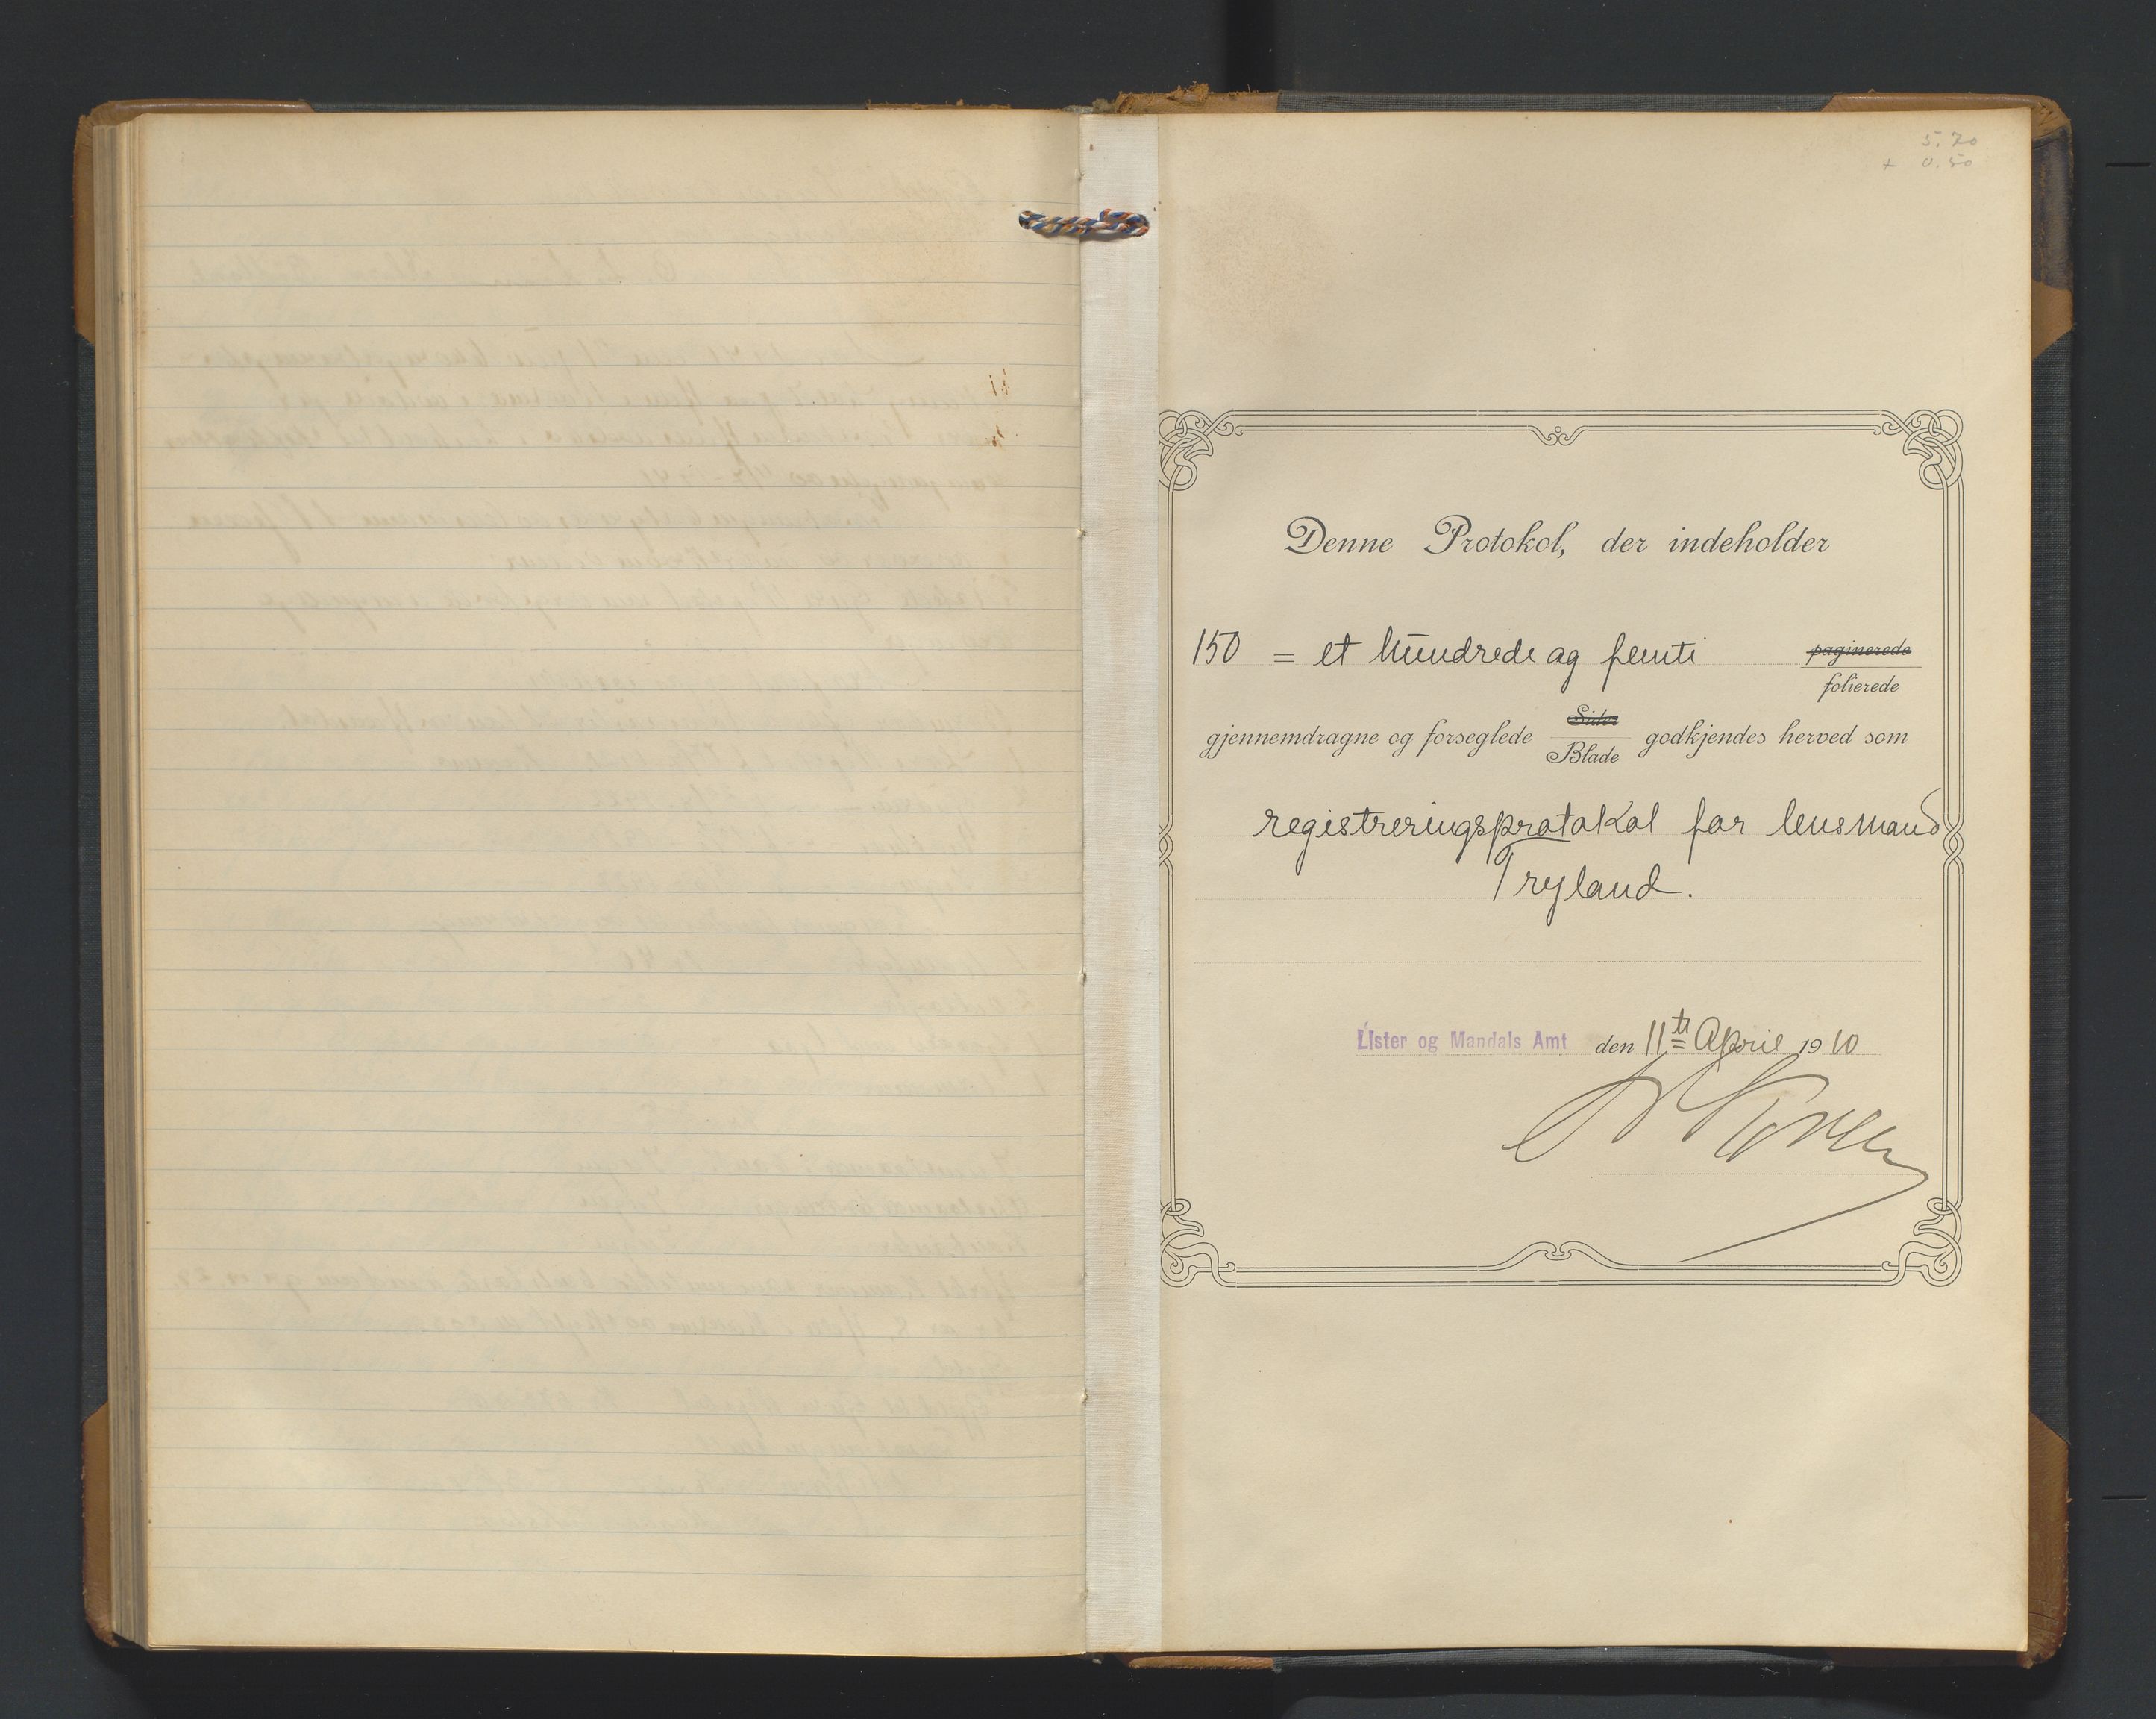 Mandal sorenskriveri, SAK/1221-0005/001/H/Hc/L0058: Skifteregistreringsprotokoll nr 14 Nord Audnedal, 1910-1941